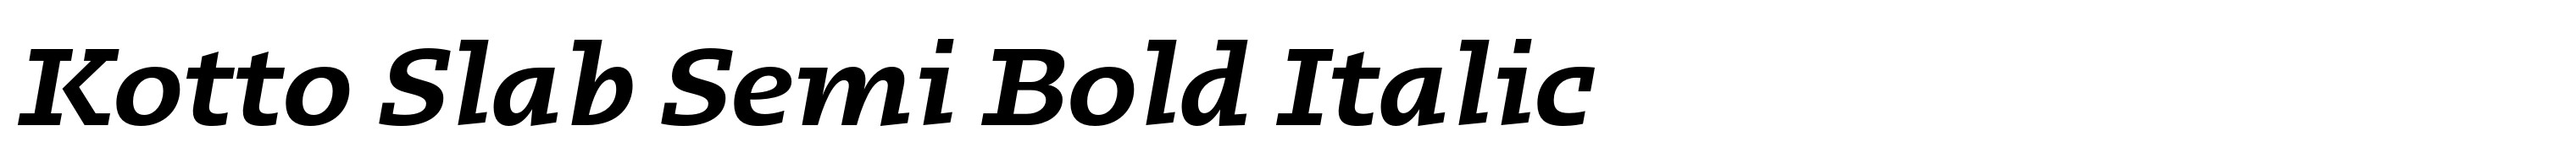 Kotto Slab Semi Bold Italic